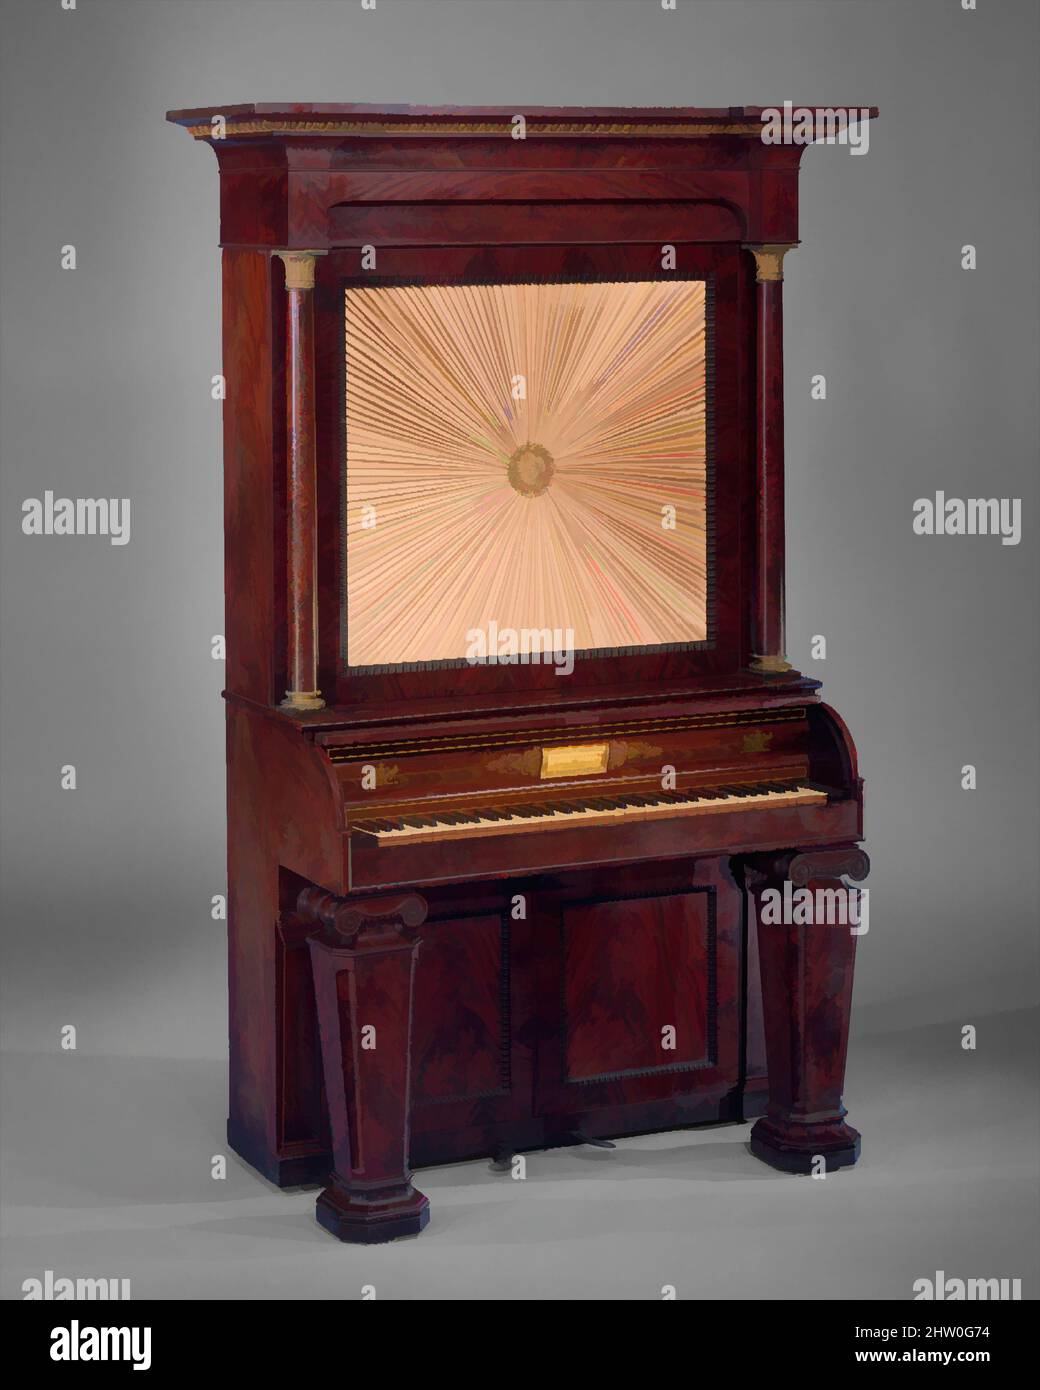 Arte ispirata da Upright Cabinet piano, 1835, New York, Stati Uniti, americano, Legno, materiali vari, Case L. (perpendicolare alla tastiera): 60,5 cm (23-7/8 poll.); W.: (Parallelo alla tastiera): 120 cm (47-1/4 poll.): H. totale: 215,5 cm (84-7/8 poll.); 3 ottava W.: 49 cm (19-3/8 poll.), opere classiche modernizzate da Artotop con un tocco di modernità. Forme, colore e valore, impatto visivo accattivante sulle emozioni artistiche attraverso la libertà delle opere d'arte in modo contemporaneo. Un messaggio senza tempo che persegue una nuova direzione selvaggiamente creativa. Artisti che si rivolgono al supporto digitale e creano l'NFT Artotop Foto Stock